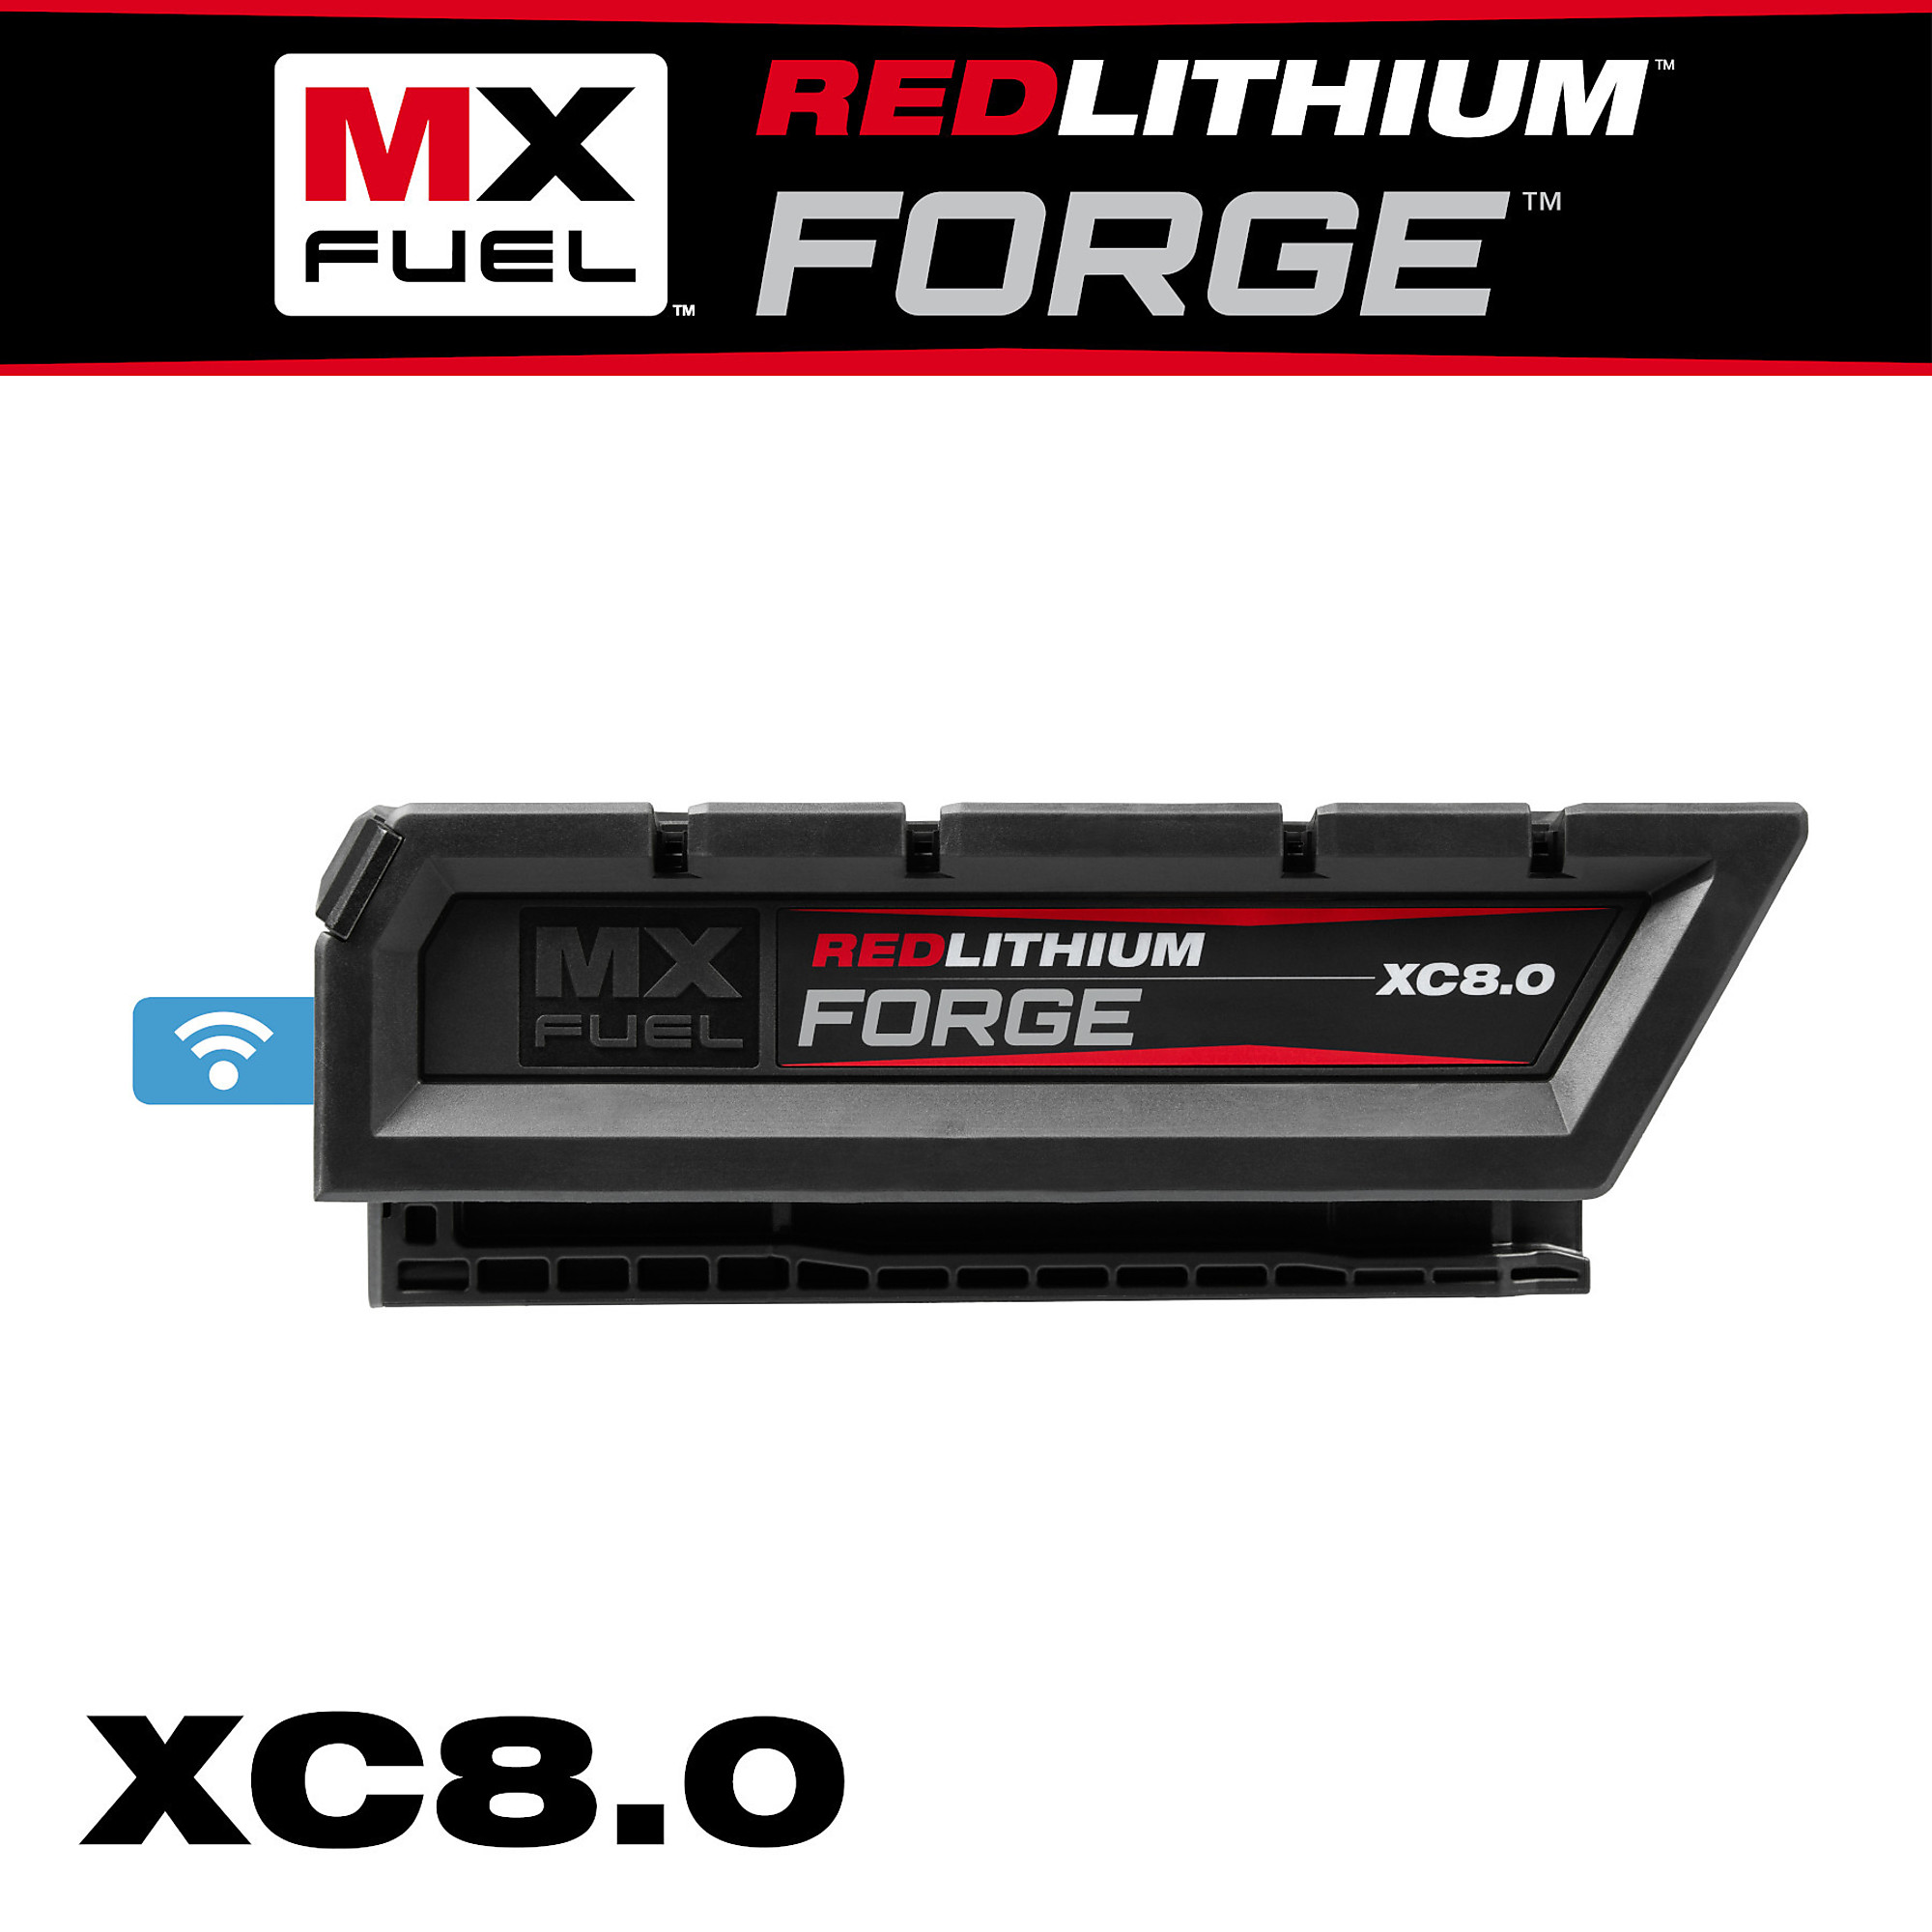 Milwaukee, MXF REDLITHIUM FORGE XC8.0, Battery Type Lithium-ion, Model MXFXC608